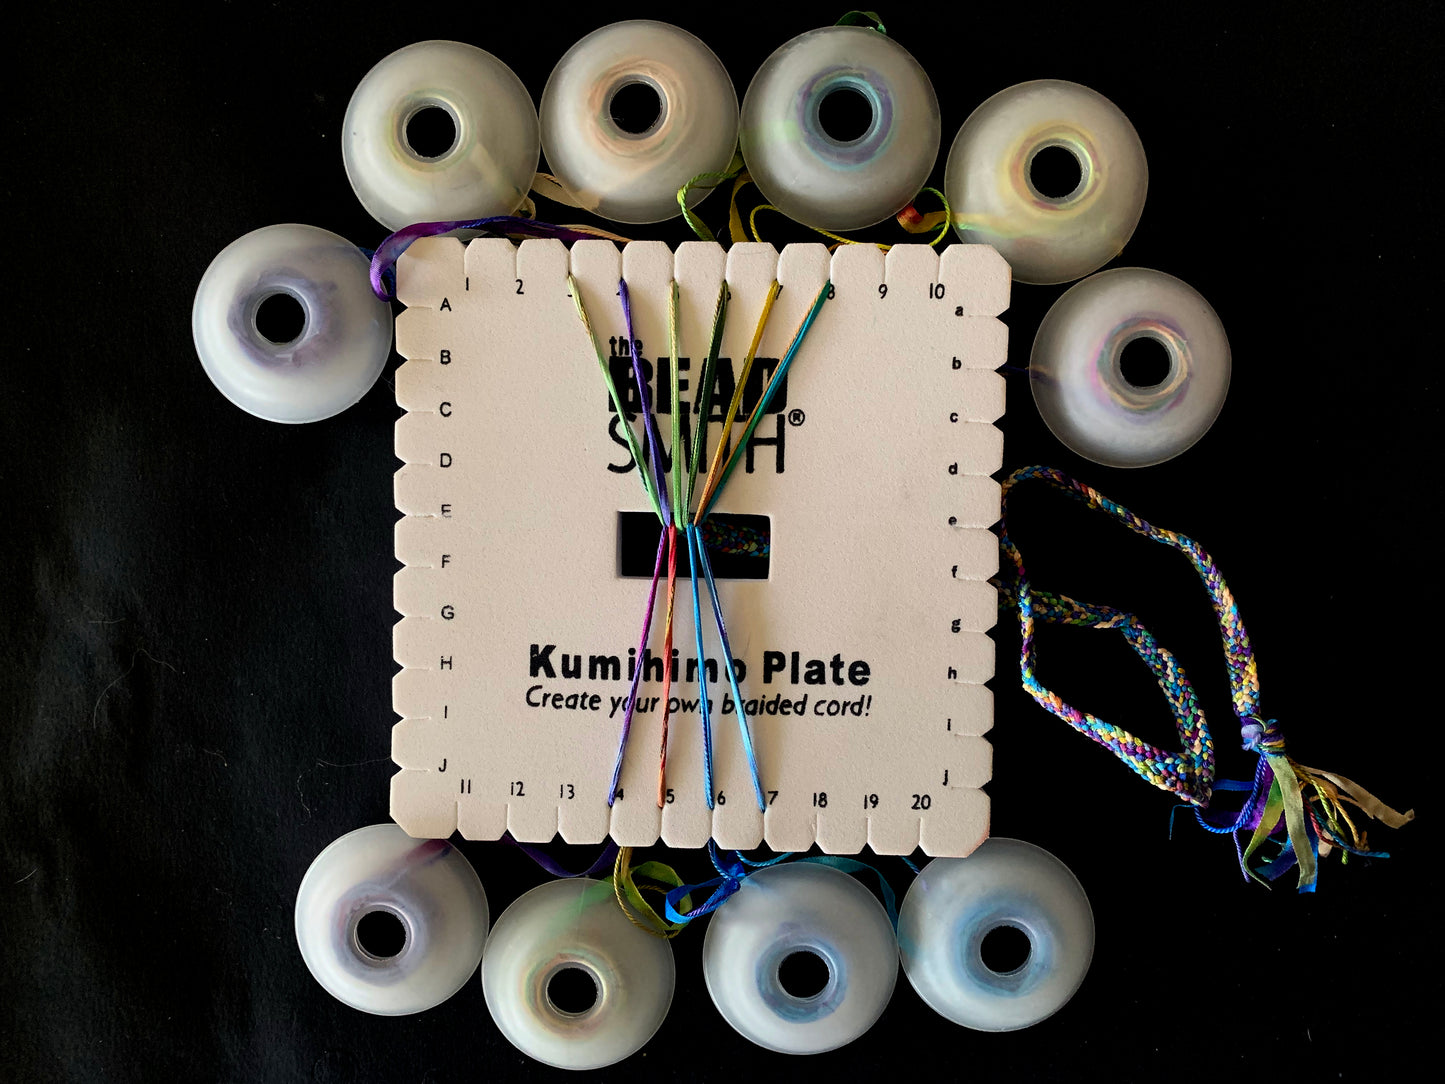 Kumihimo Square Disk Kit